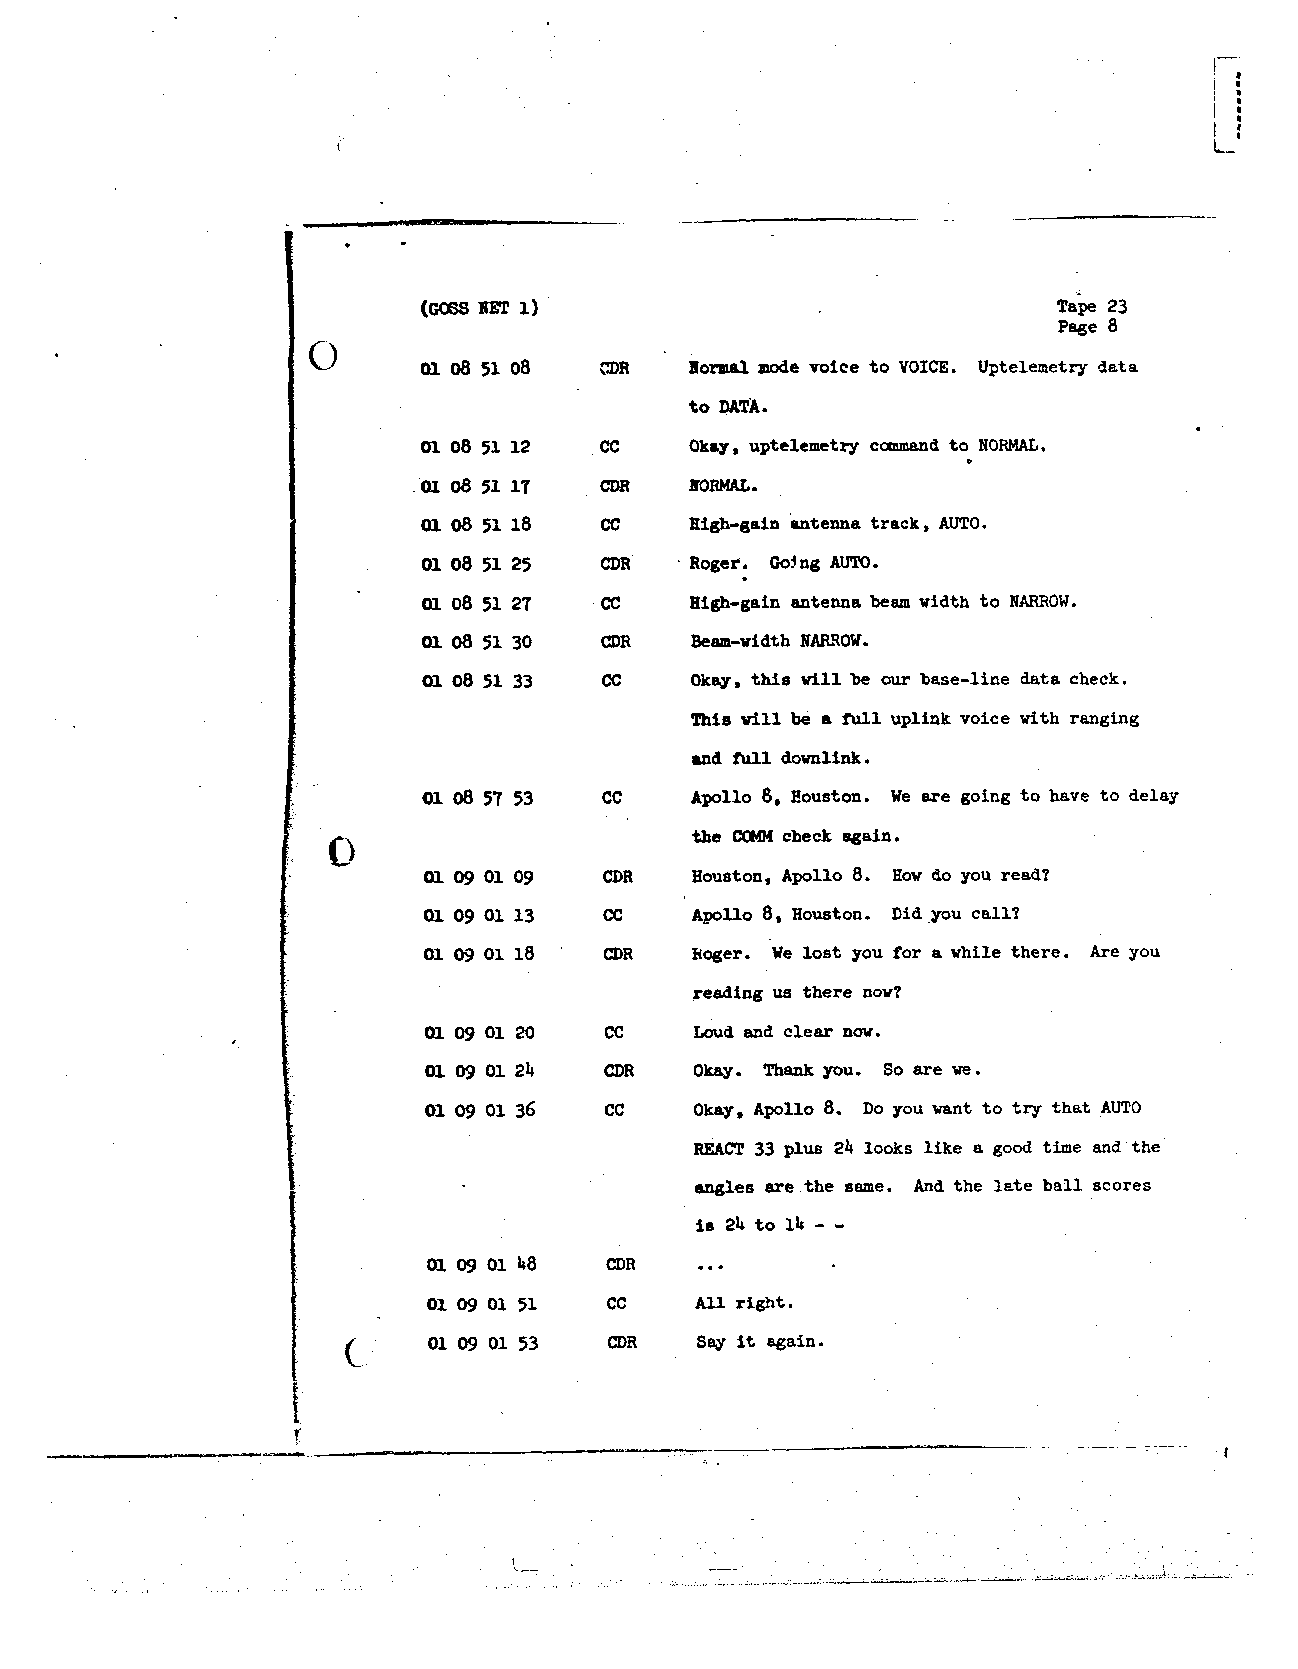 Page 184 of Apollo 8’s original transcript